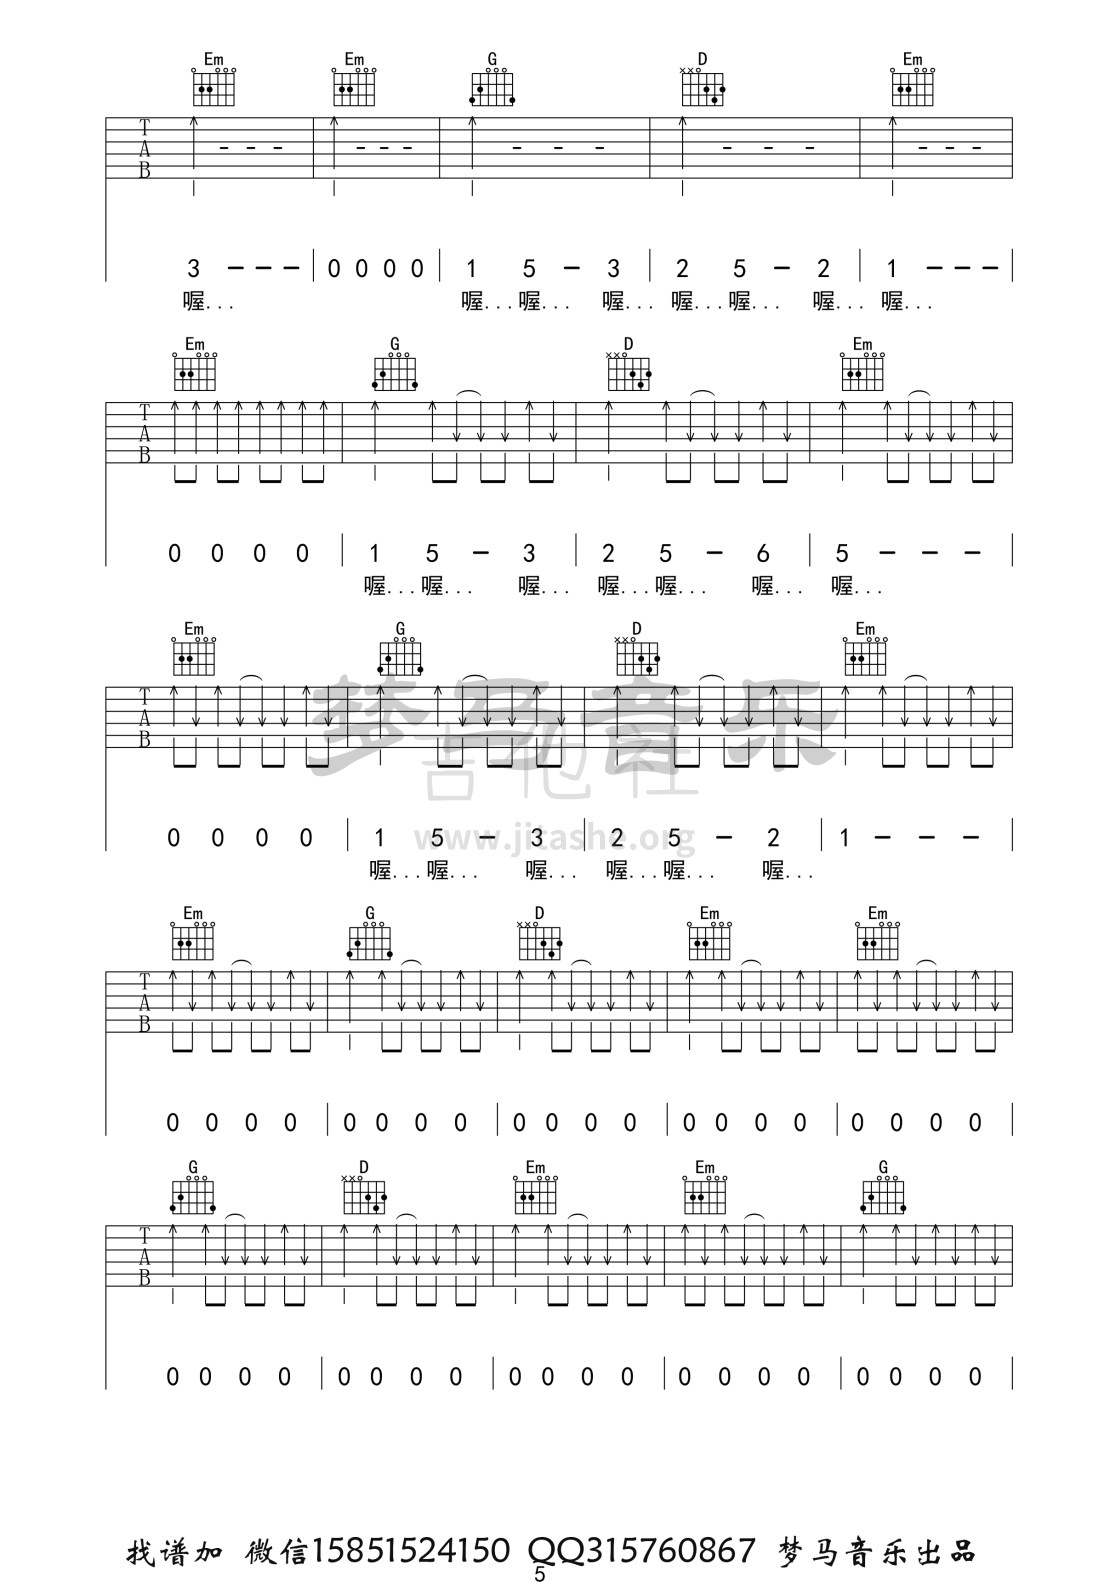 打印:步行街的吉他手吉他谱_张闯_步行街的吉他手-5.jpg